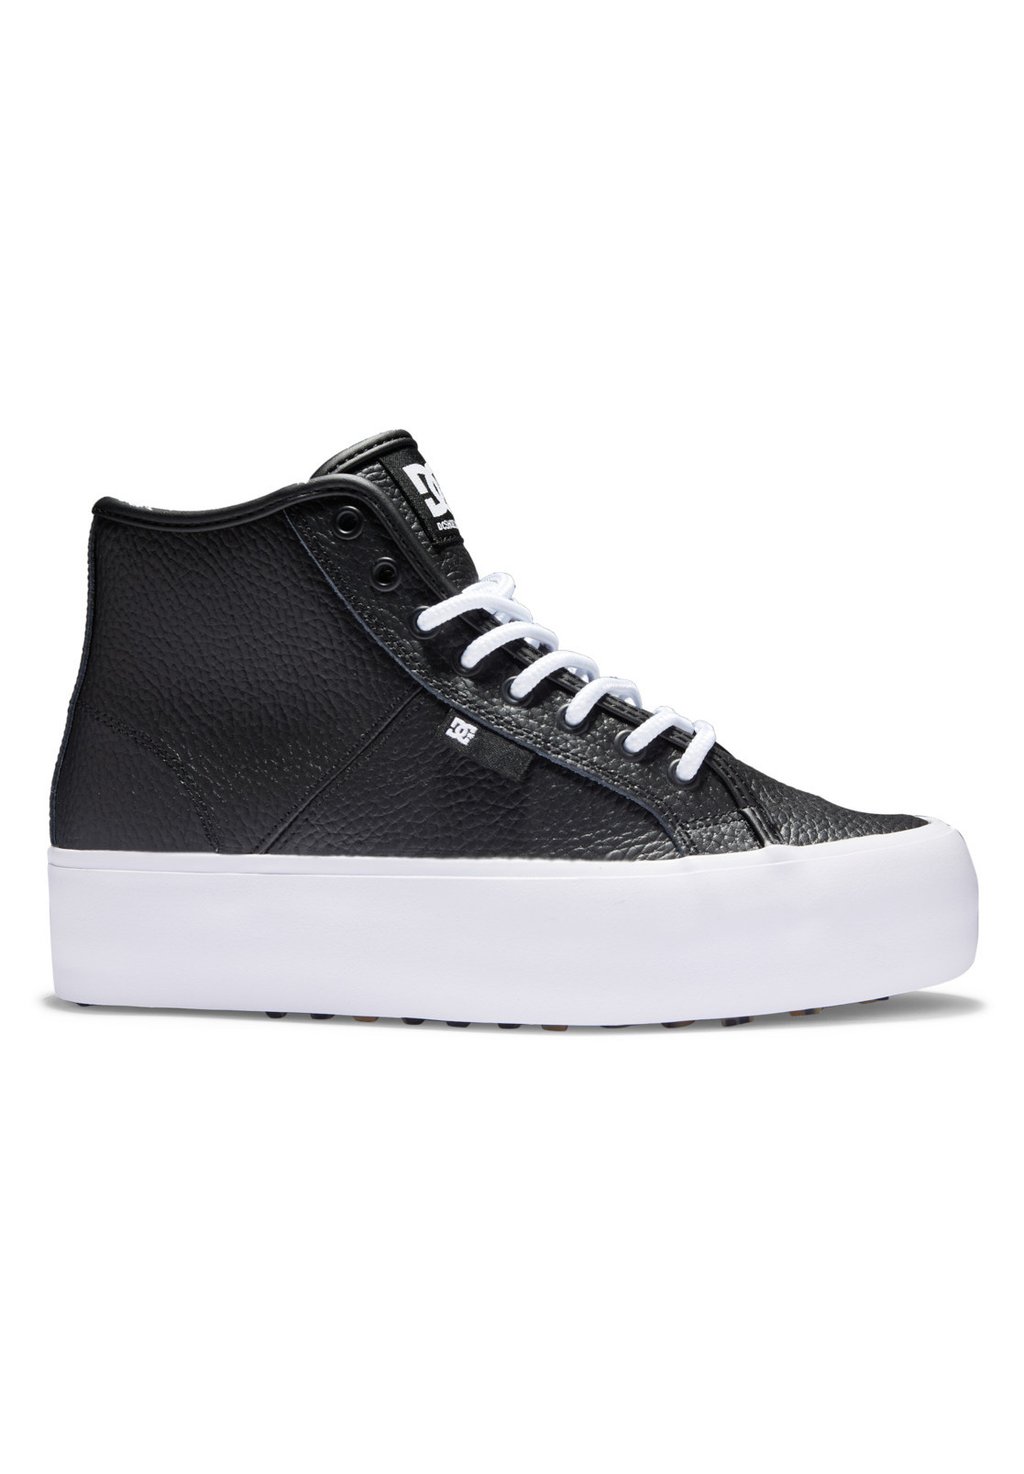 Высокие кроссовки DC Shoes MANUAL, цвет black white кроссовки dc manual v цвет black white print